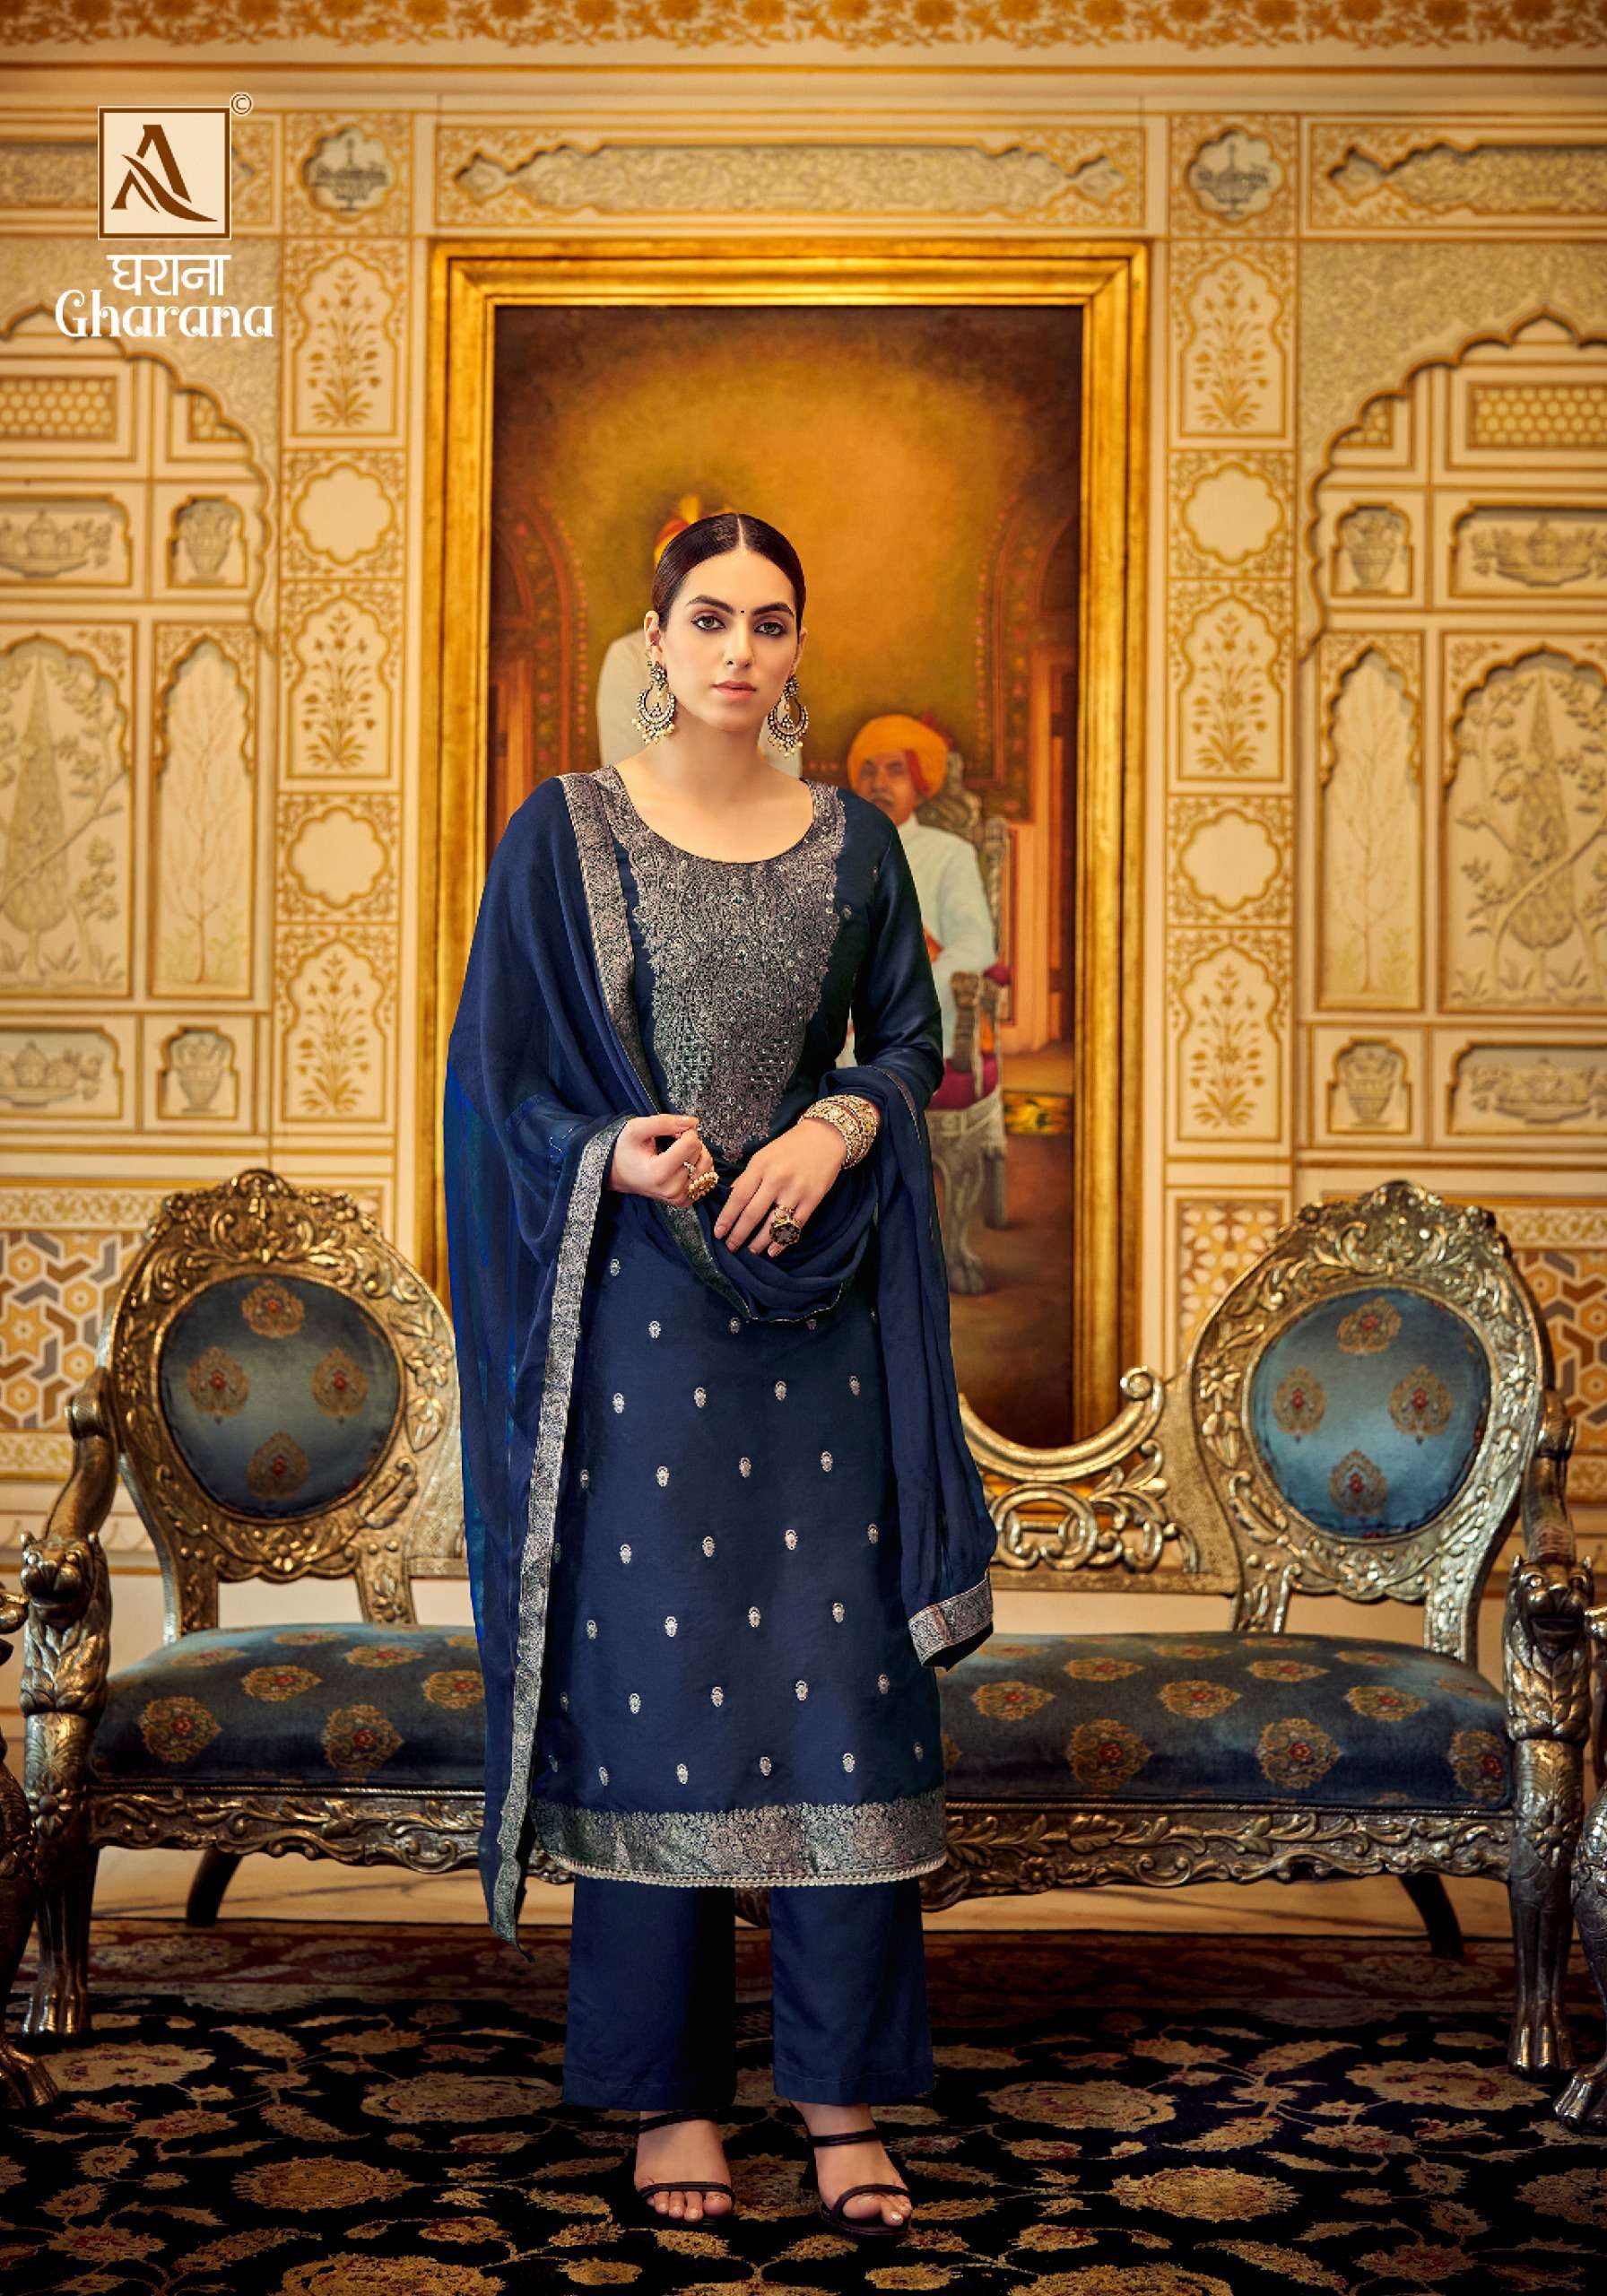 Gharana Buy Alok Suits Wholesale Designer Supplier Dola Salwar Suit Sets